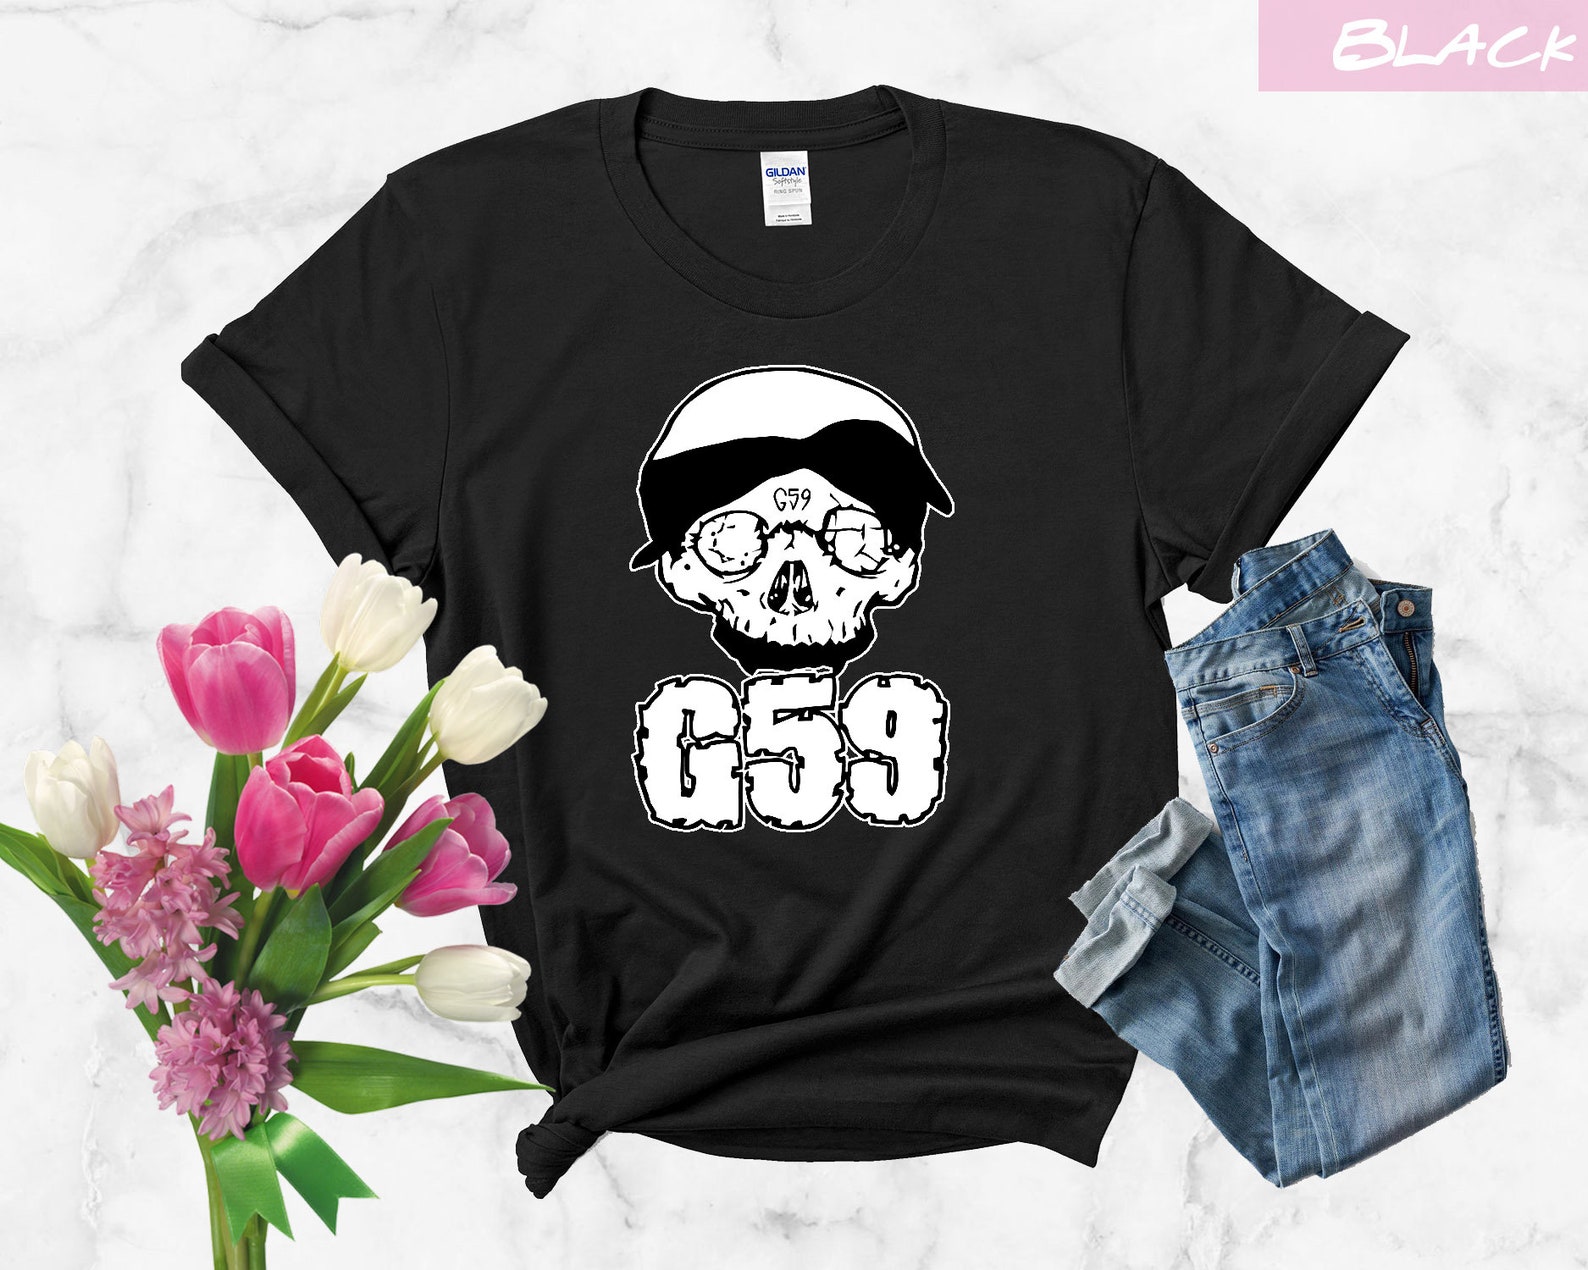 G59 Merch G59 Records Merch Black TShirt Tshirt Present Etsy